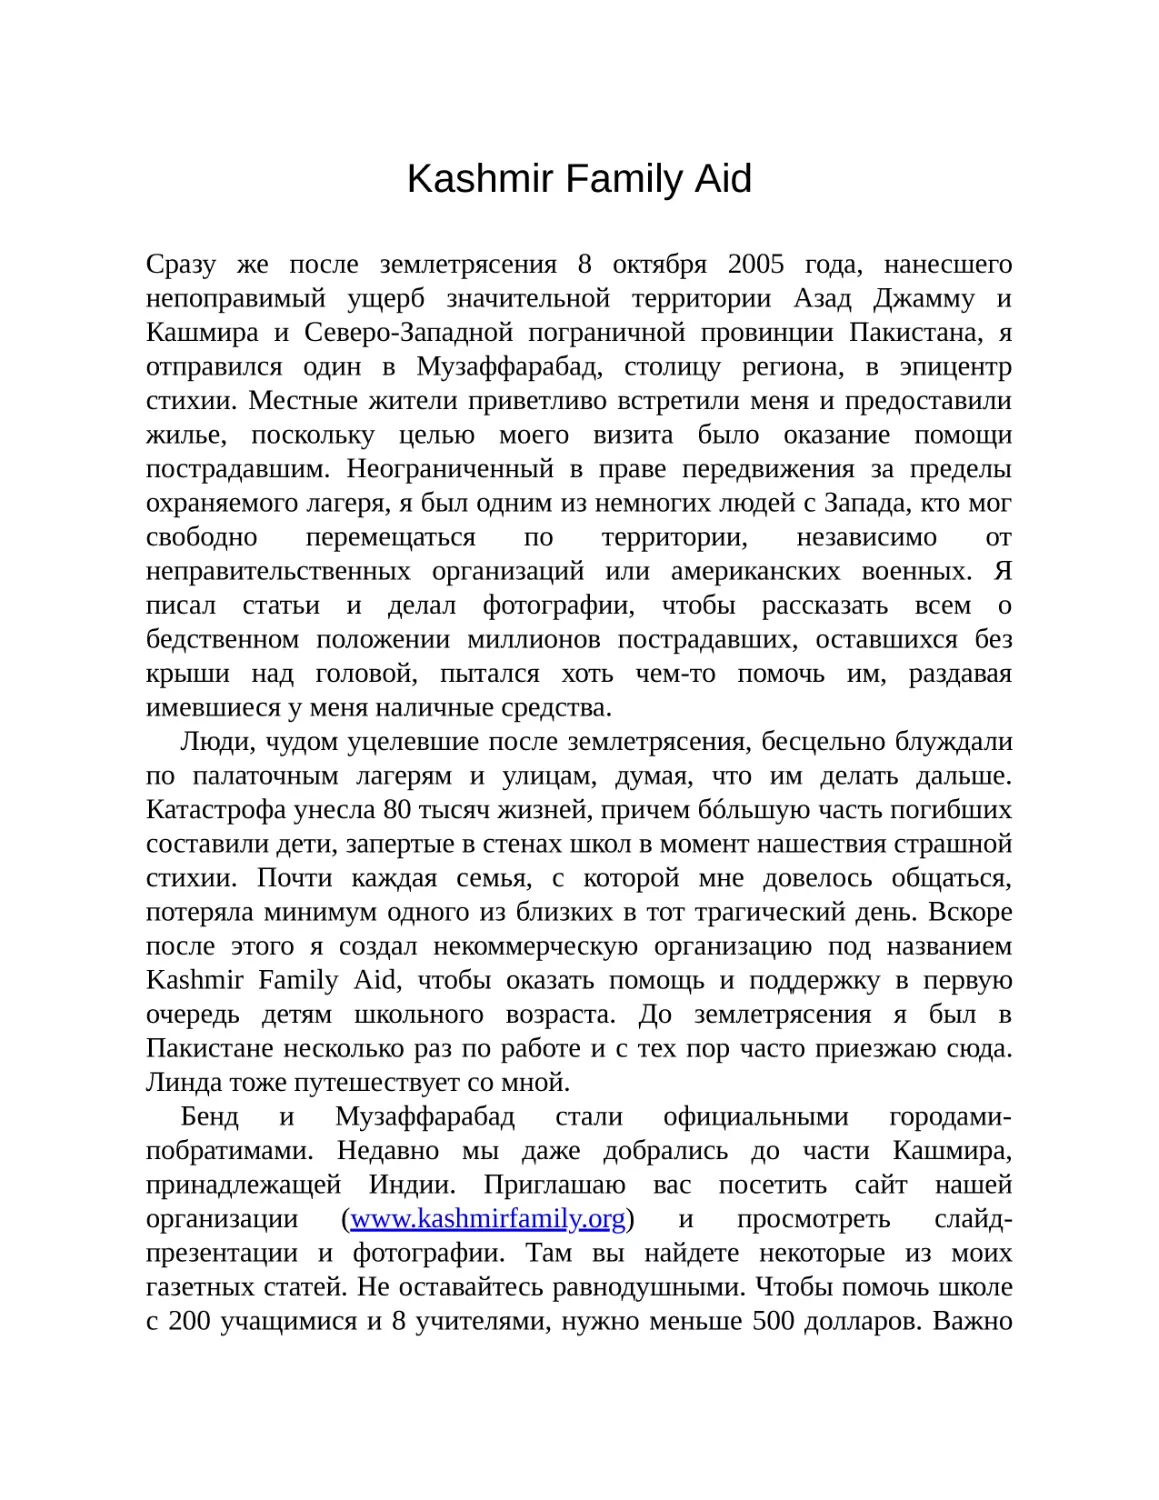 Kashmir Family Aid